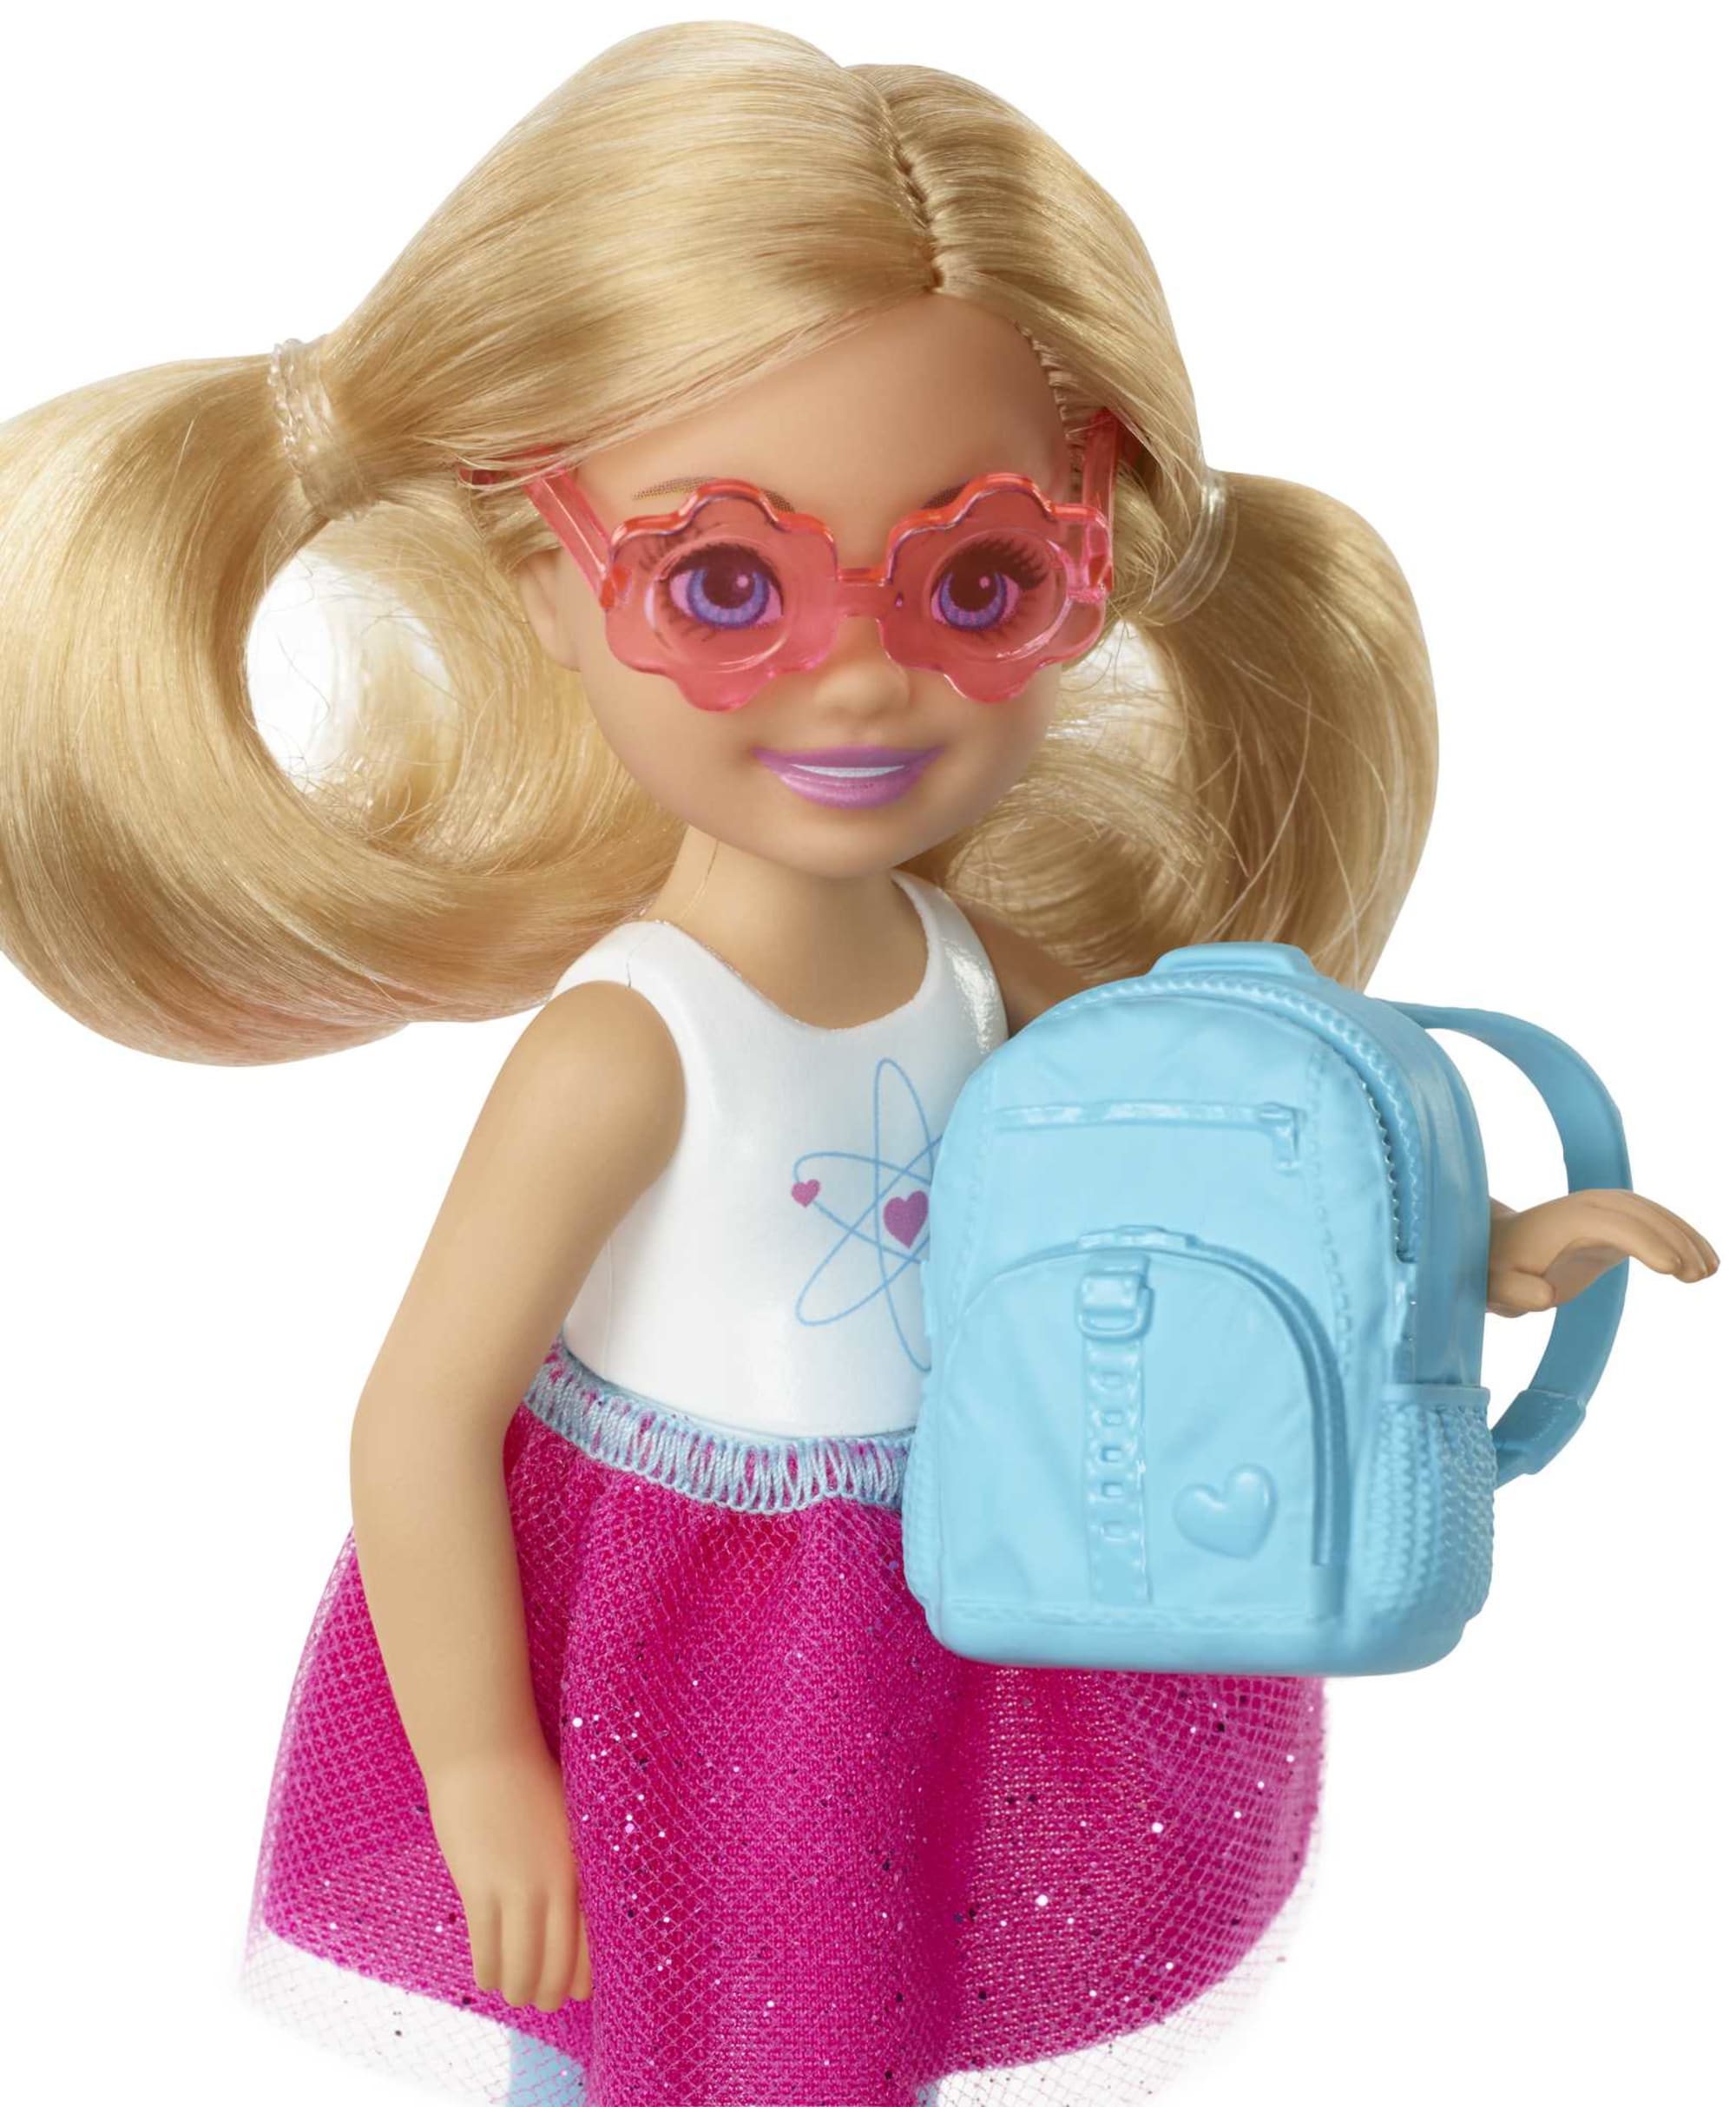 Barbie Dreamhouse Adventures Muñeca Explora y Descubre Chelsea Viajera